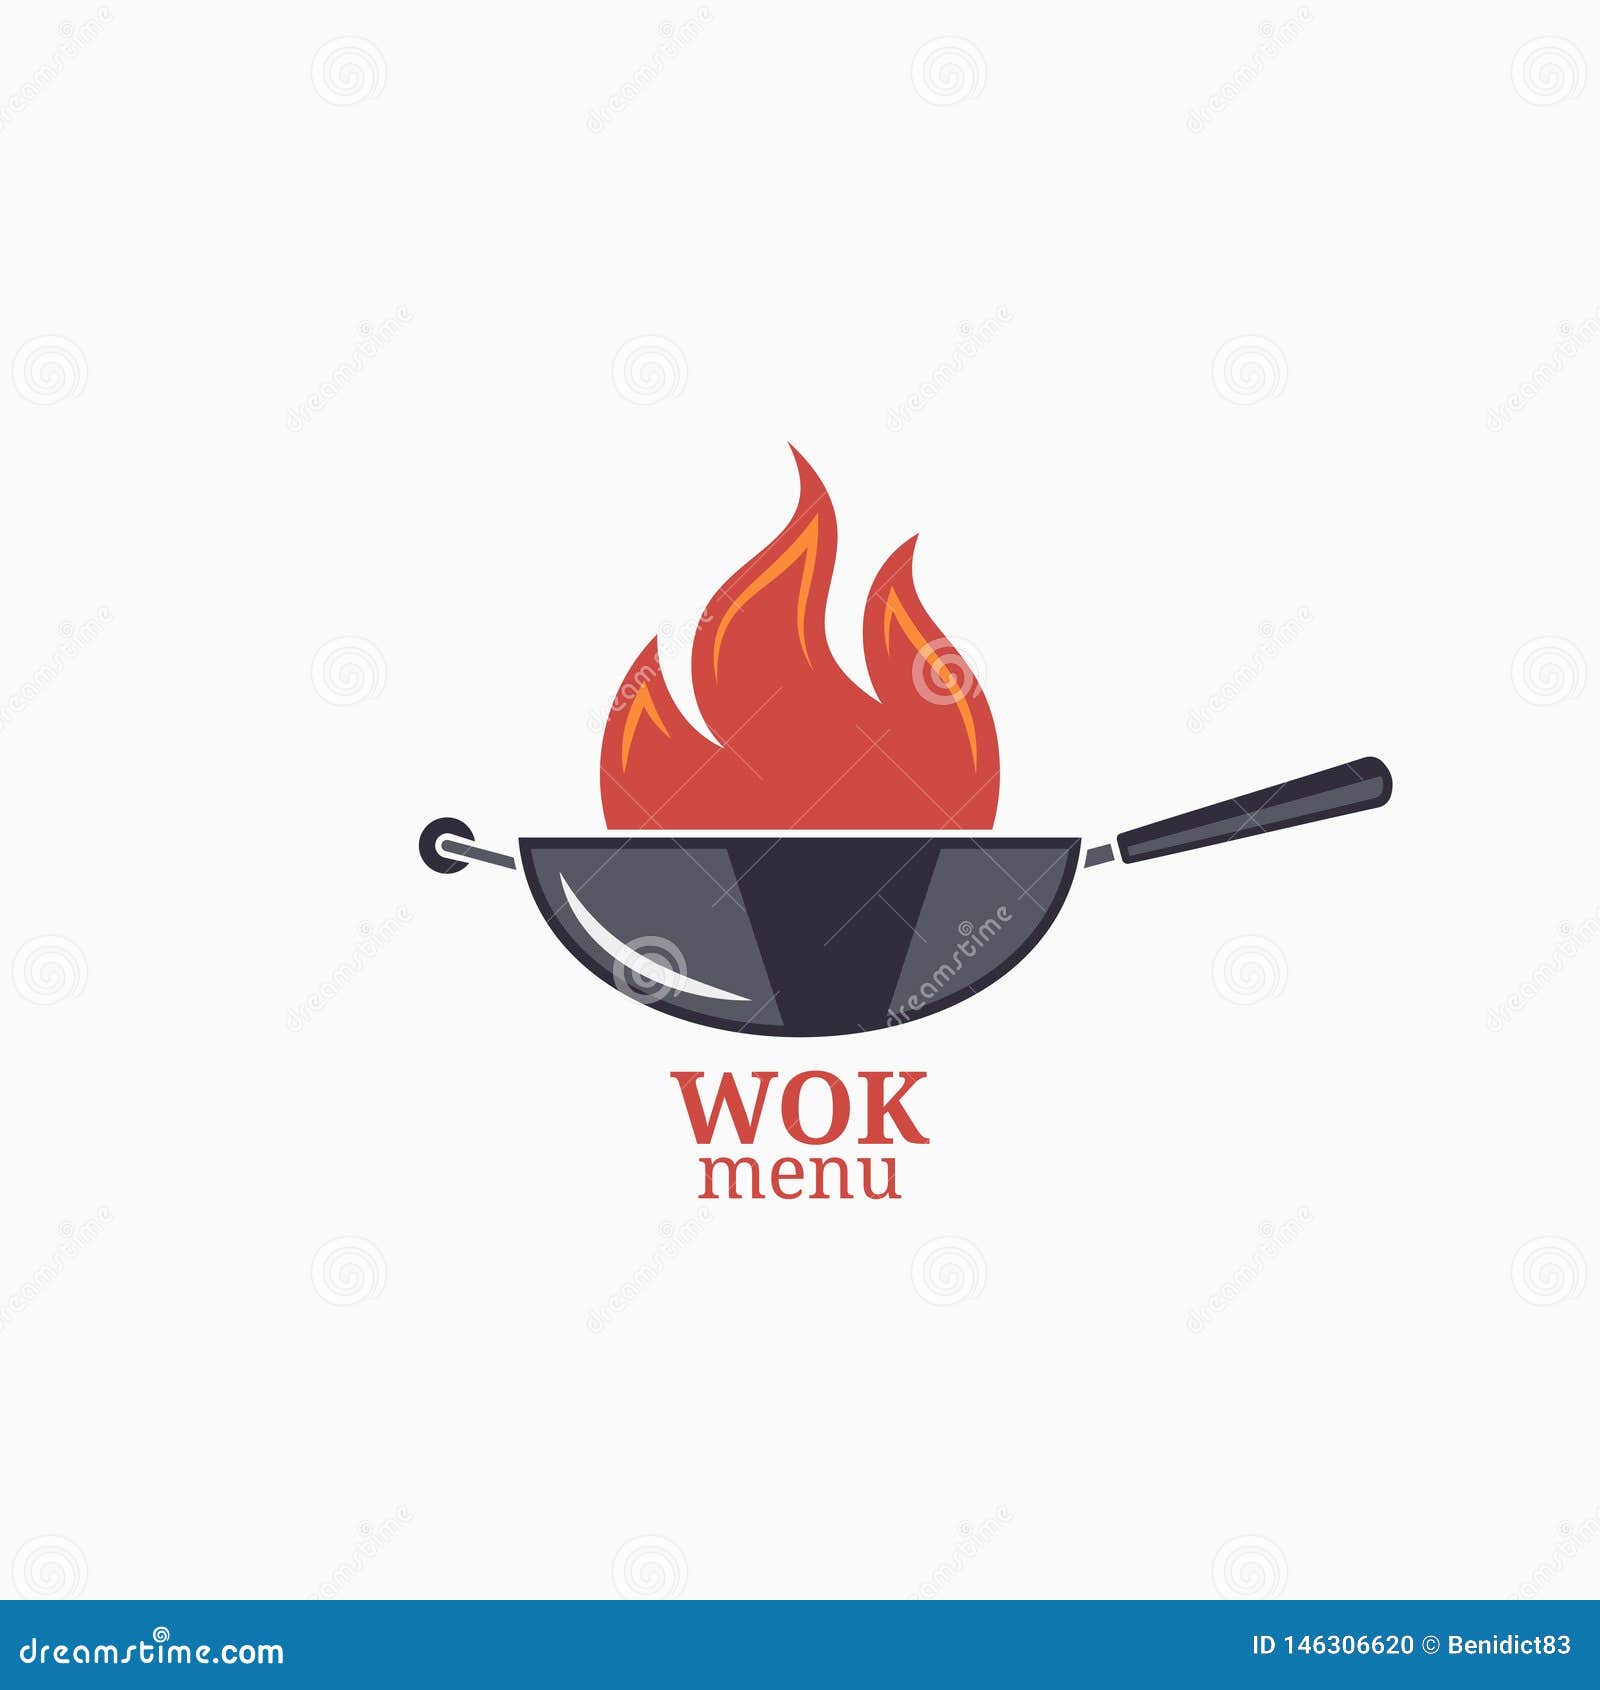 frying pan  menu. wok with fire flame